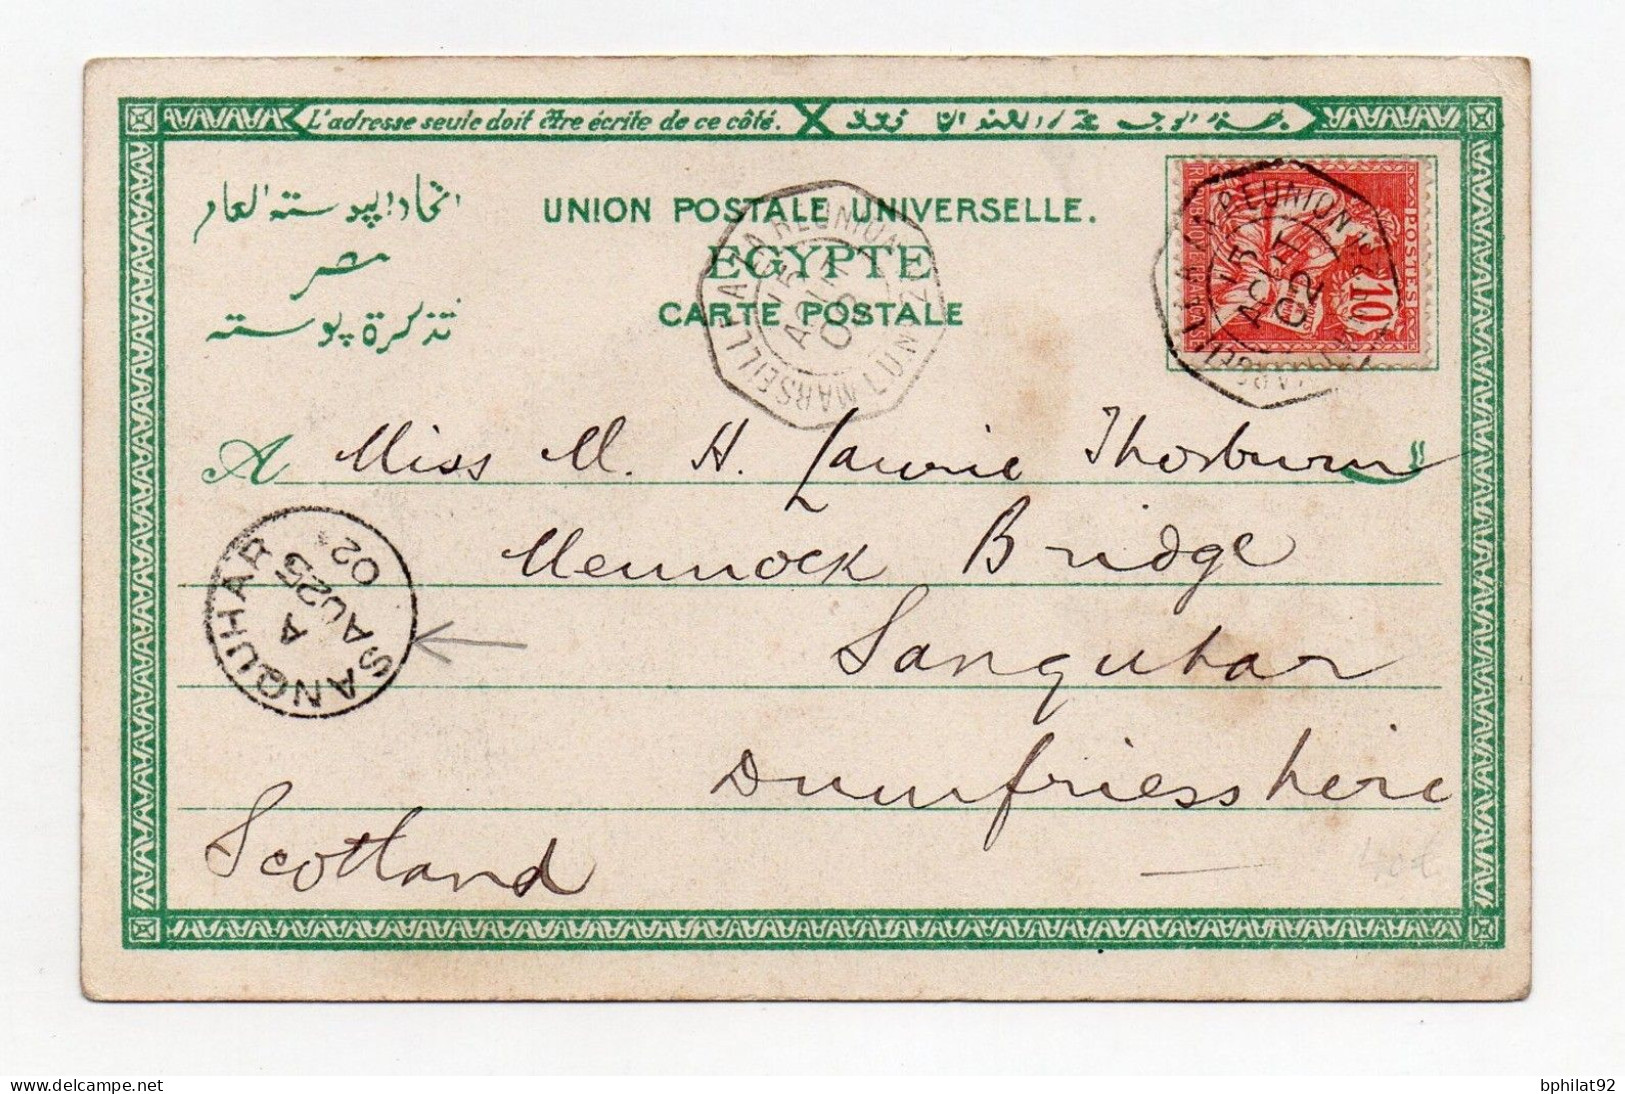 !!! CPA DE PORT SAID DE 1902 POUR L'ECOSSE, AFFRANCHIE 10C MOUCHON - Covers & Documents